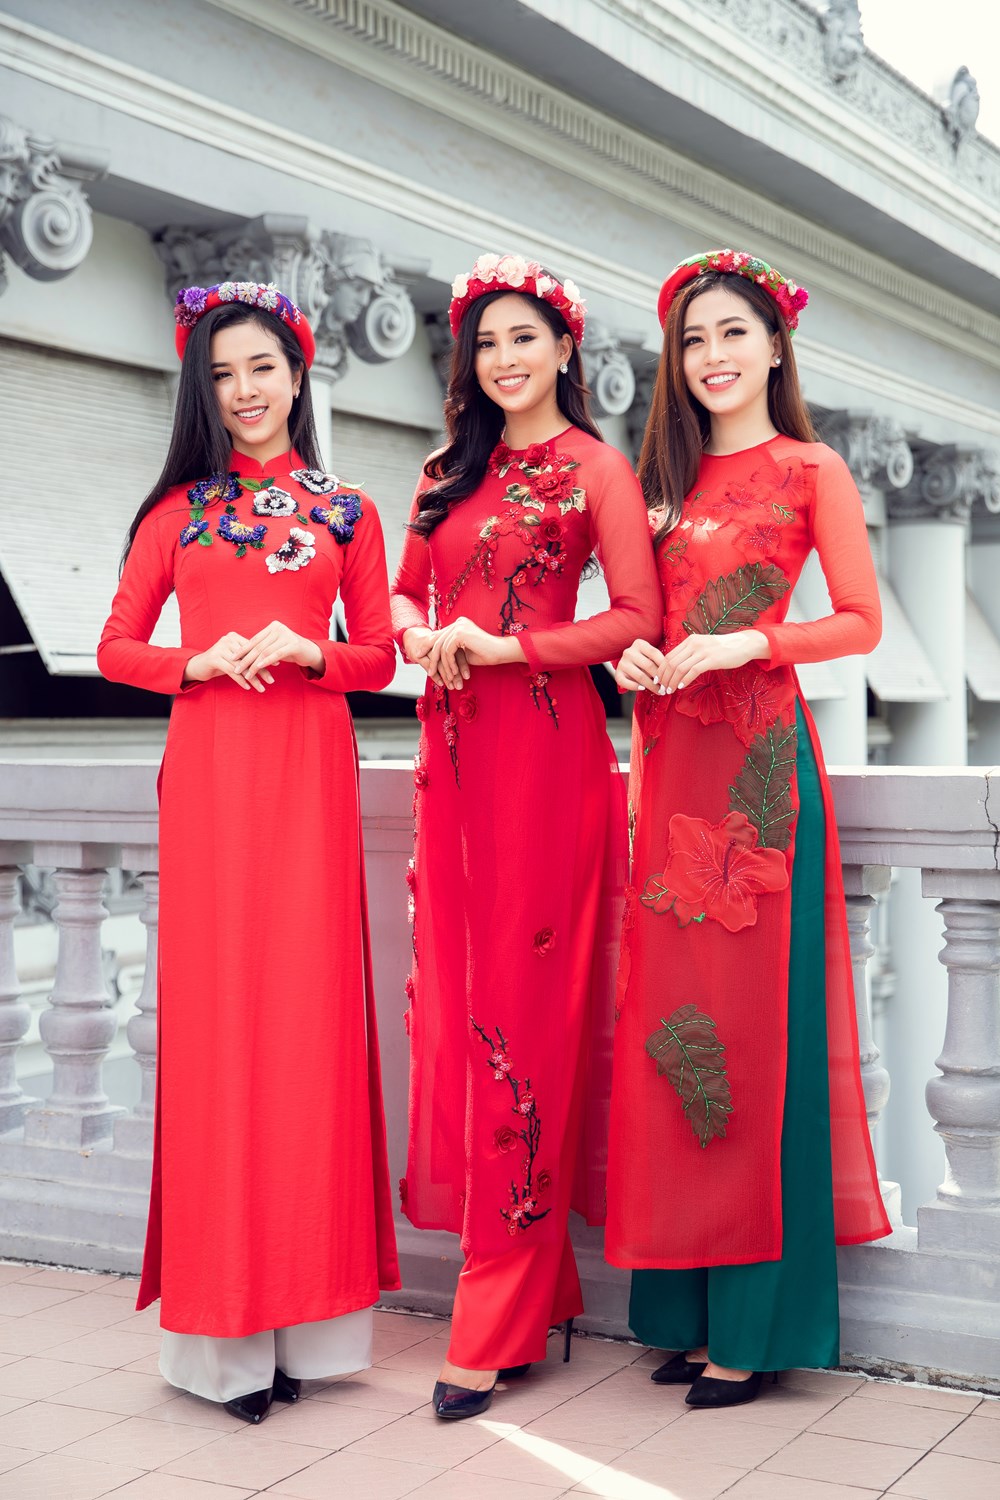 Top 3 Hoa hậu Việt Nam 2018 rạng rỡ trong bộ ảnh Tết - ảnh 1